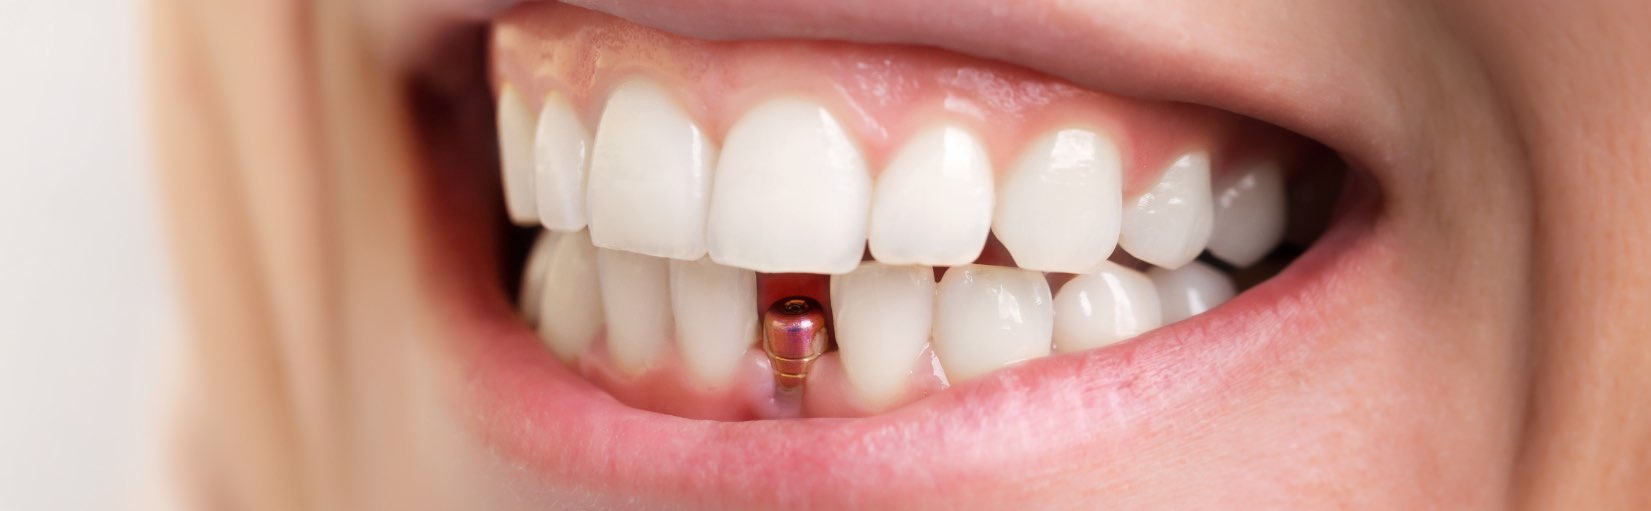 Studio Dentistico Rossi Zanon | Implantologia